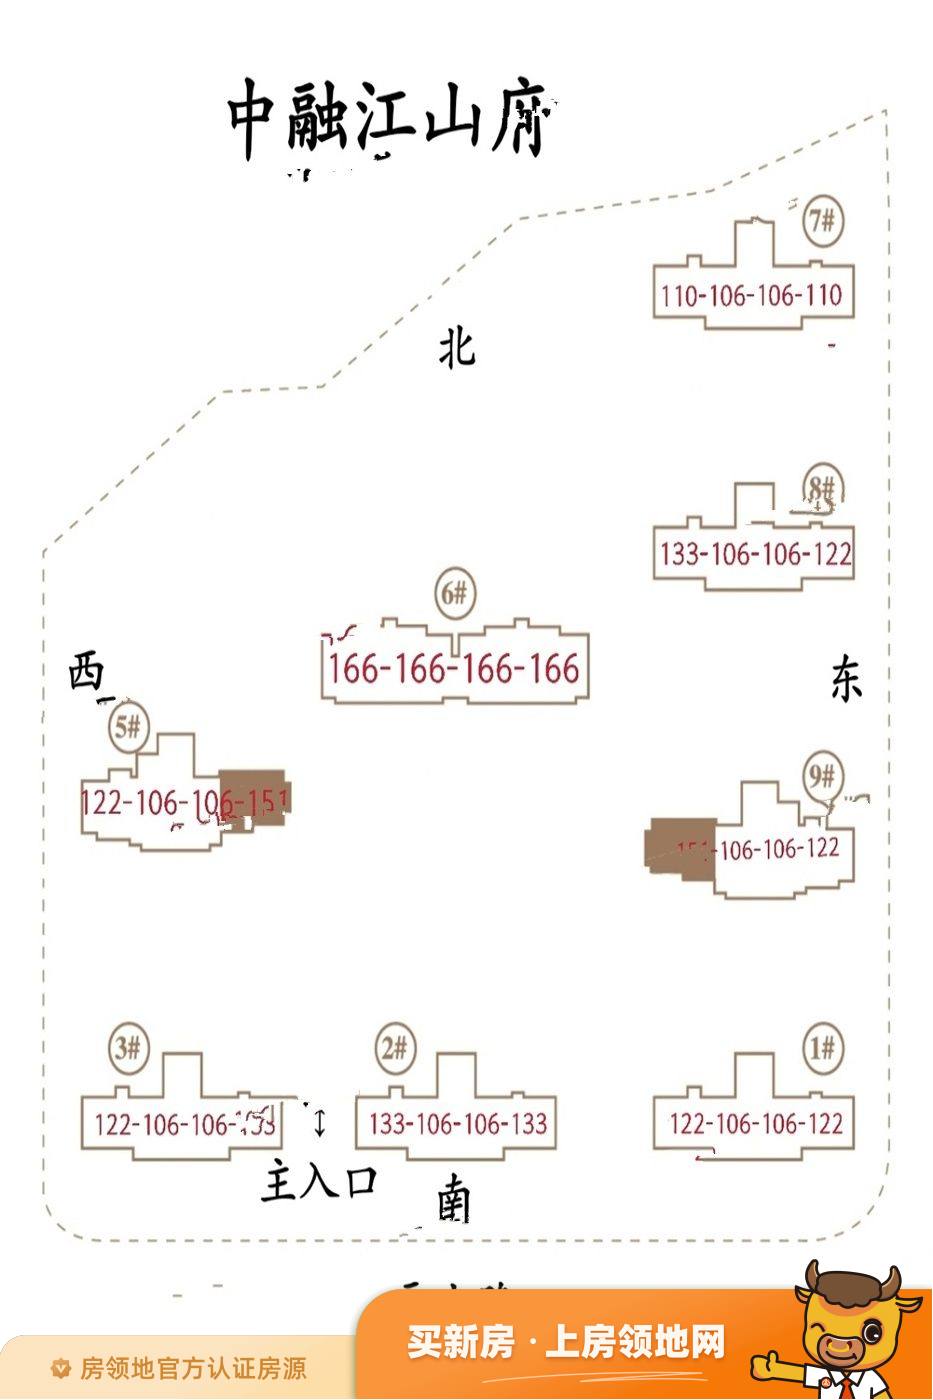 CROSS尚公馆商铺规划图1